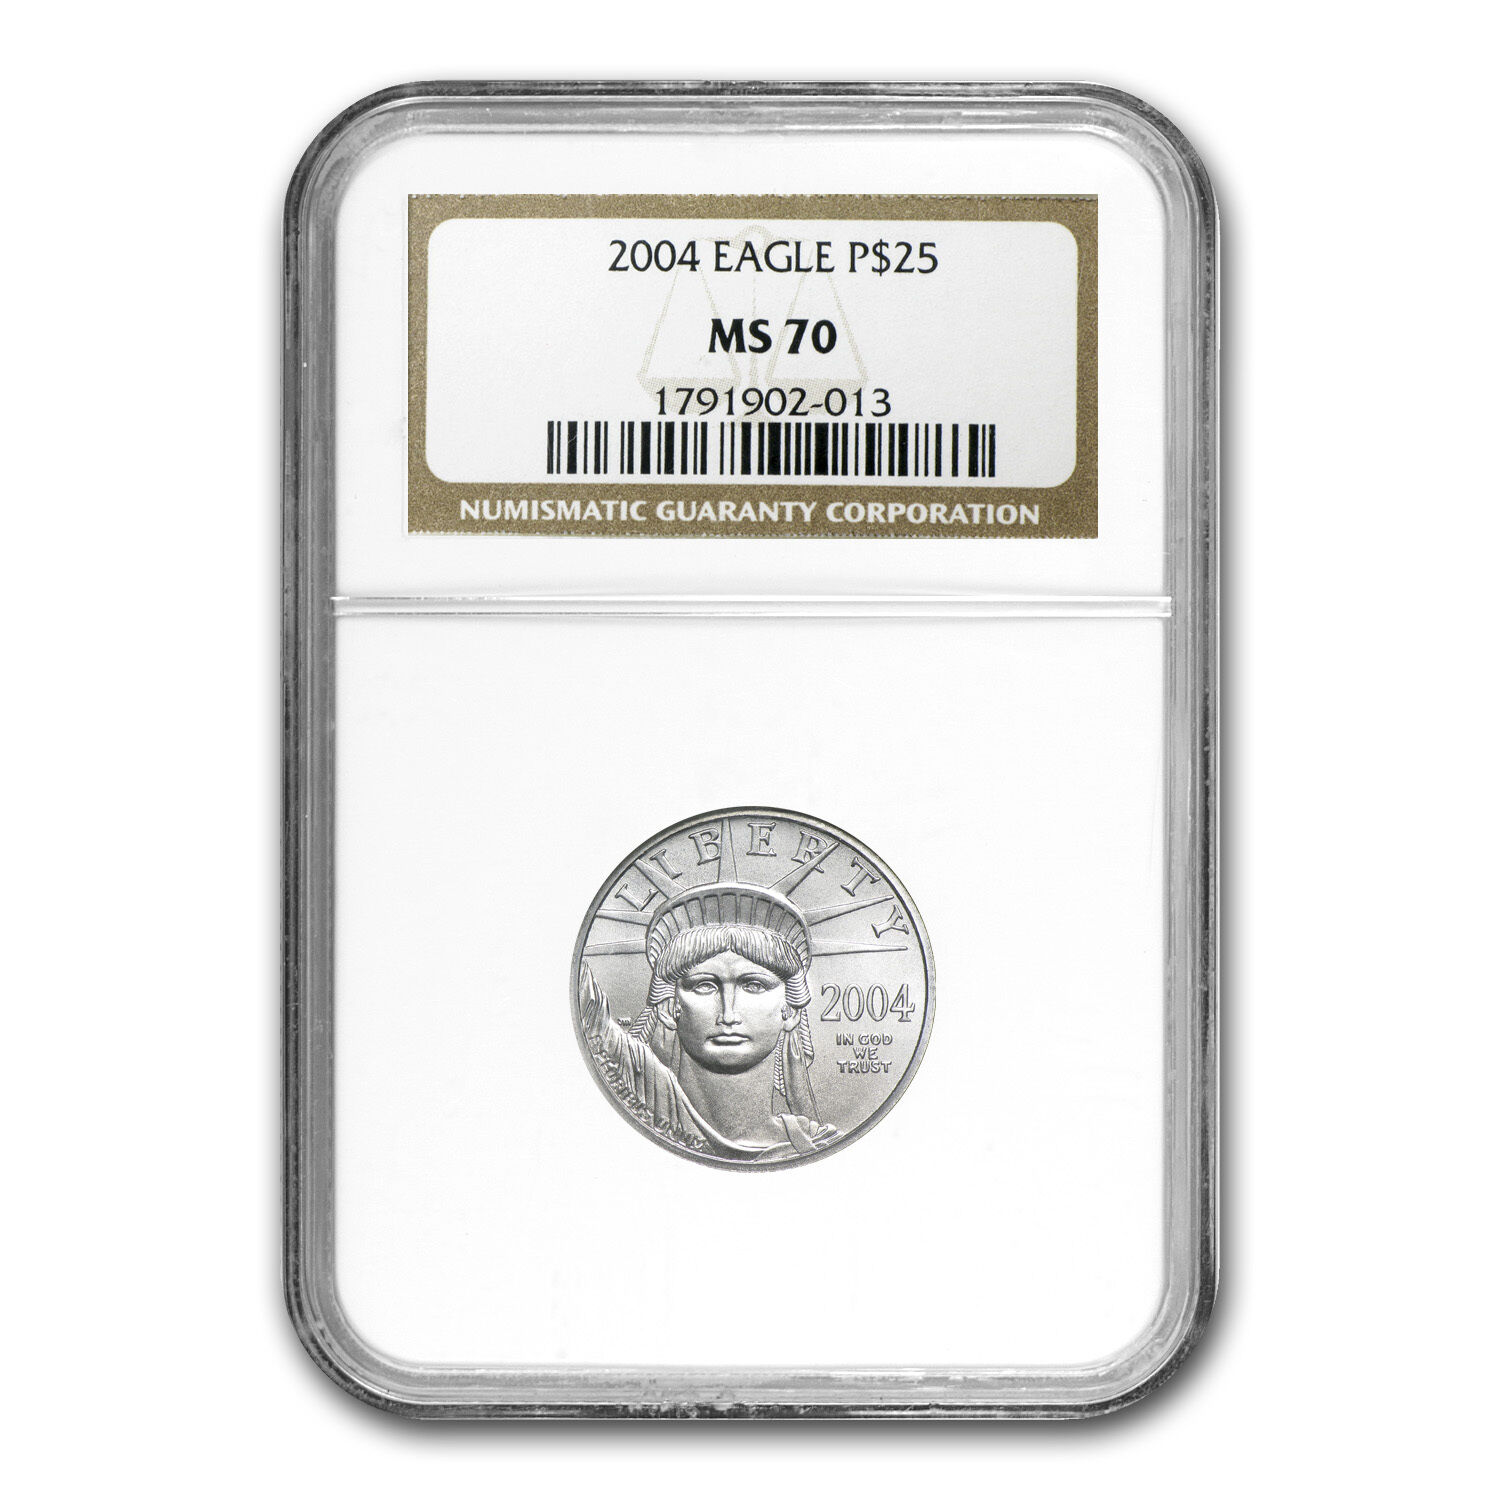 2004 1/4 oz Platinum American Eagle Coin - MS-70 NGC - SKU #20523